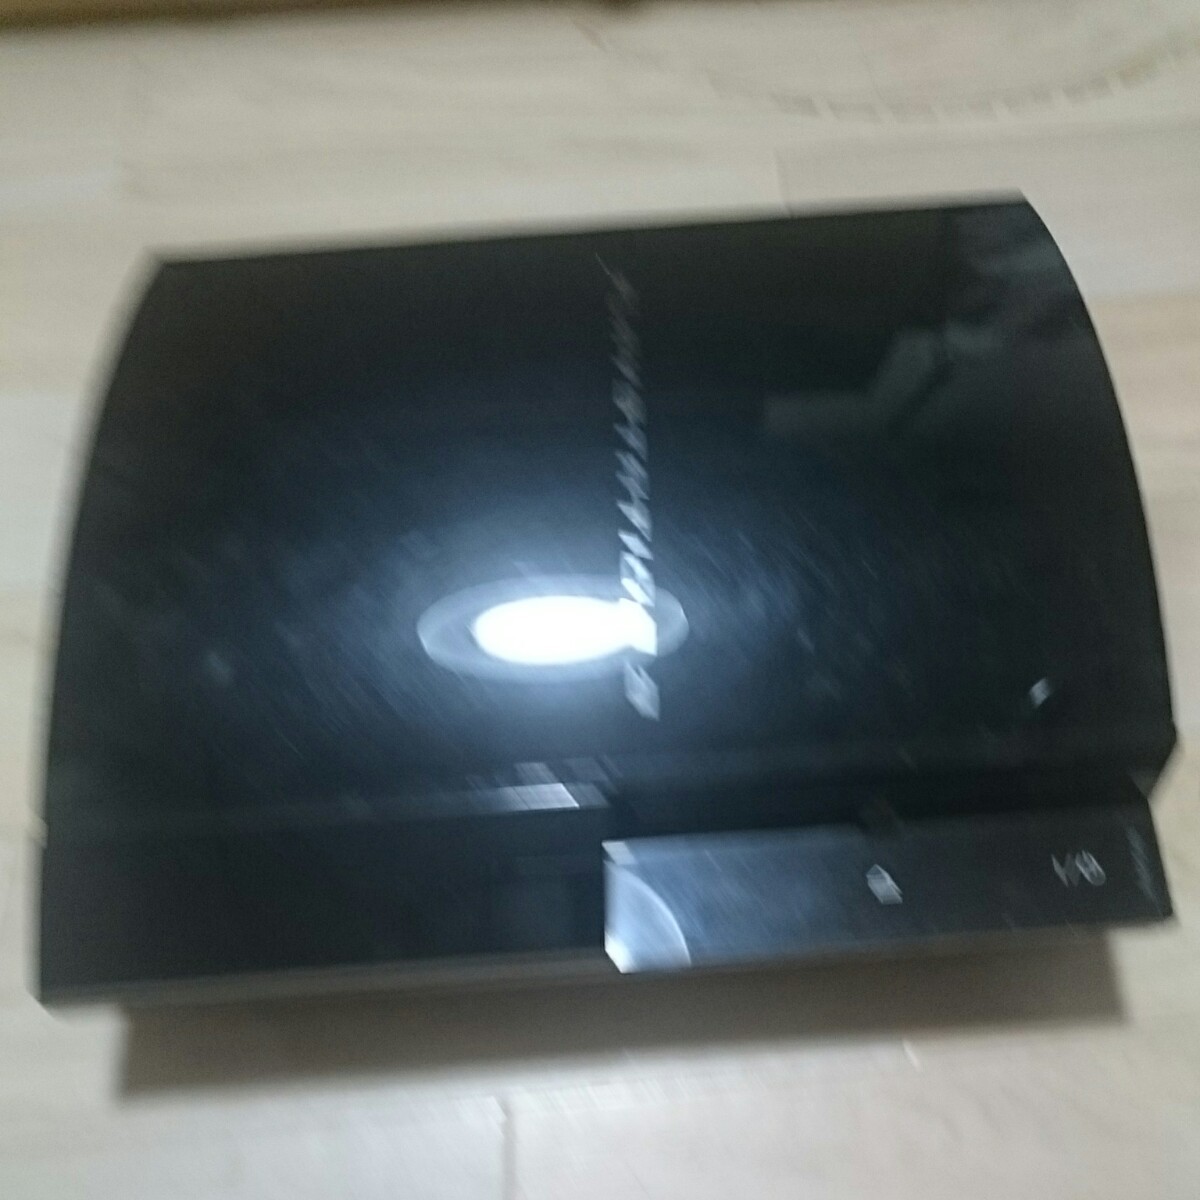 ソニー PS3 初期型 CECHA00×1 CECHB00×1 ジャンク